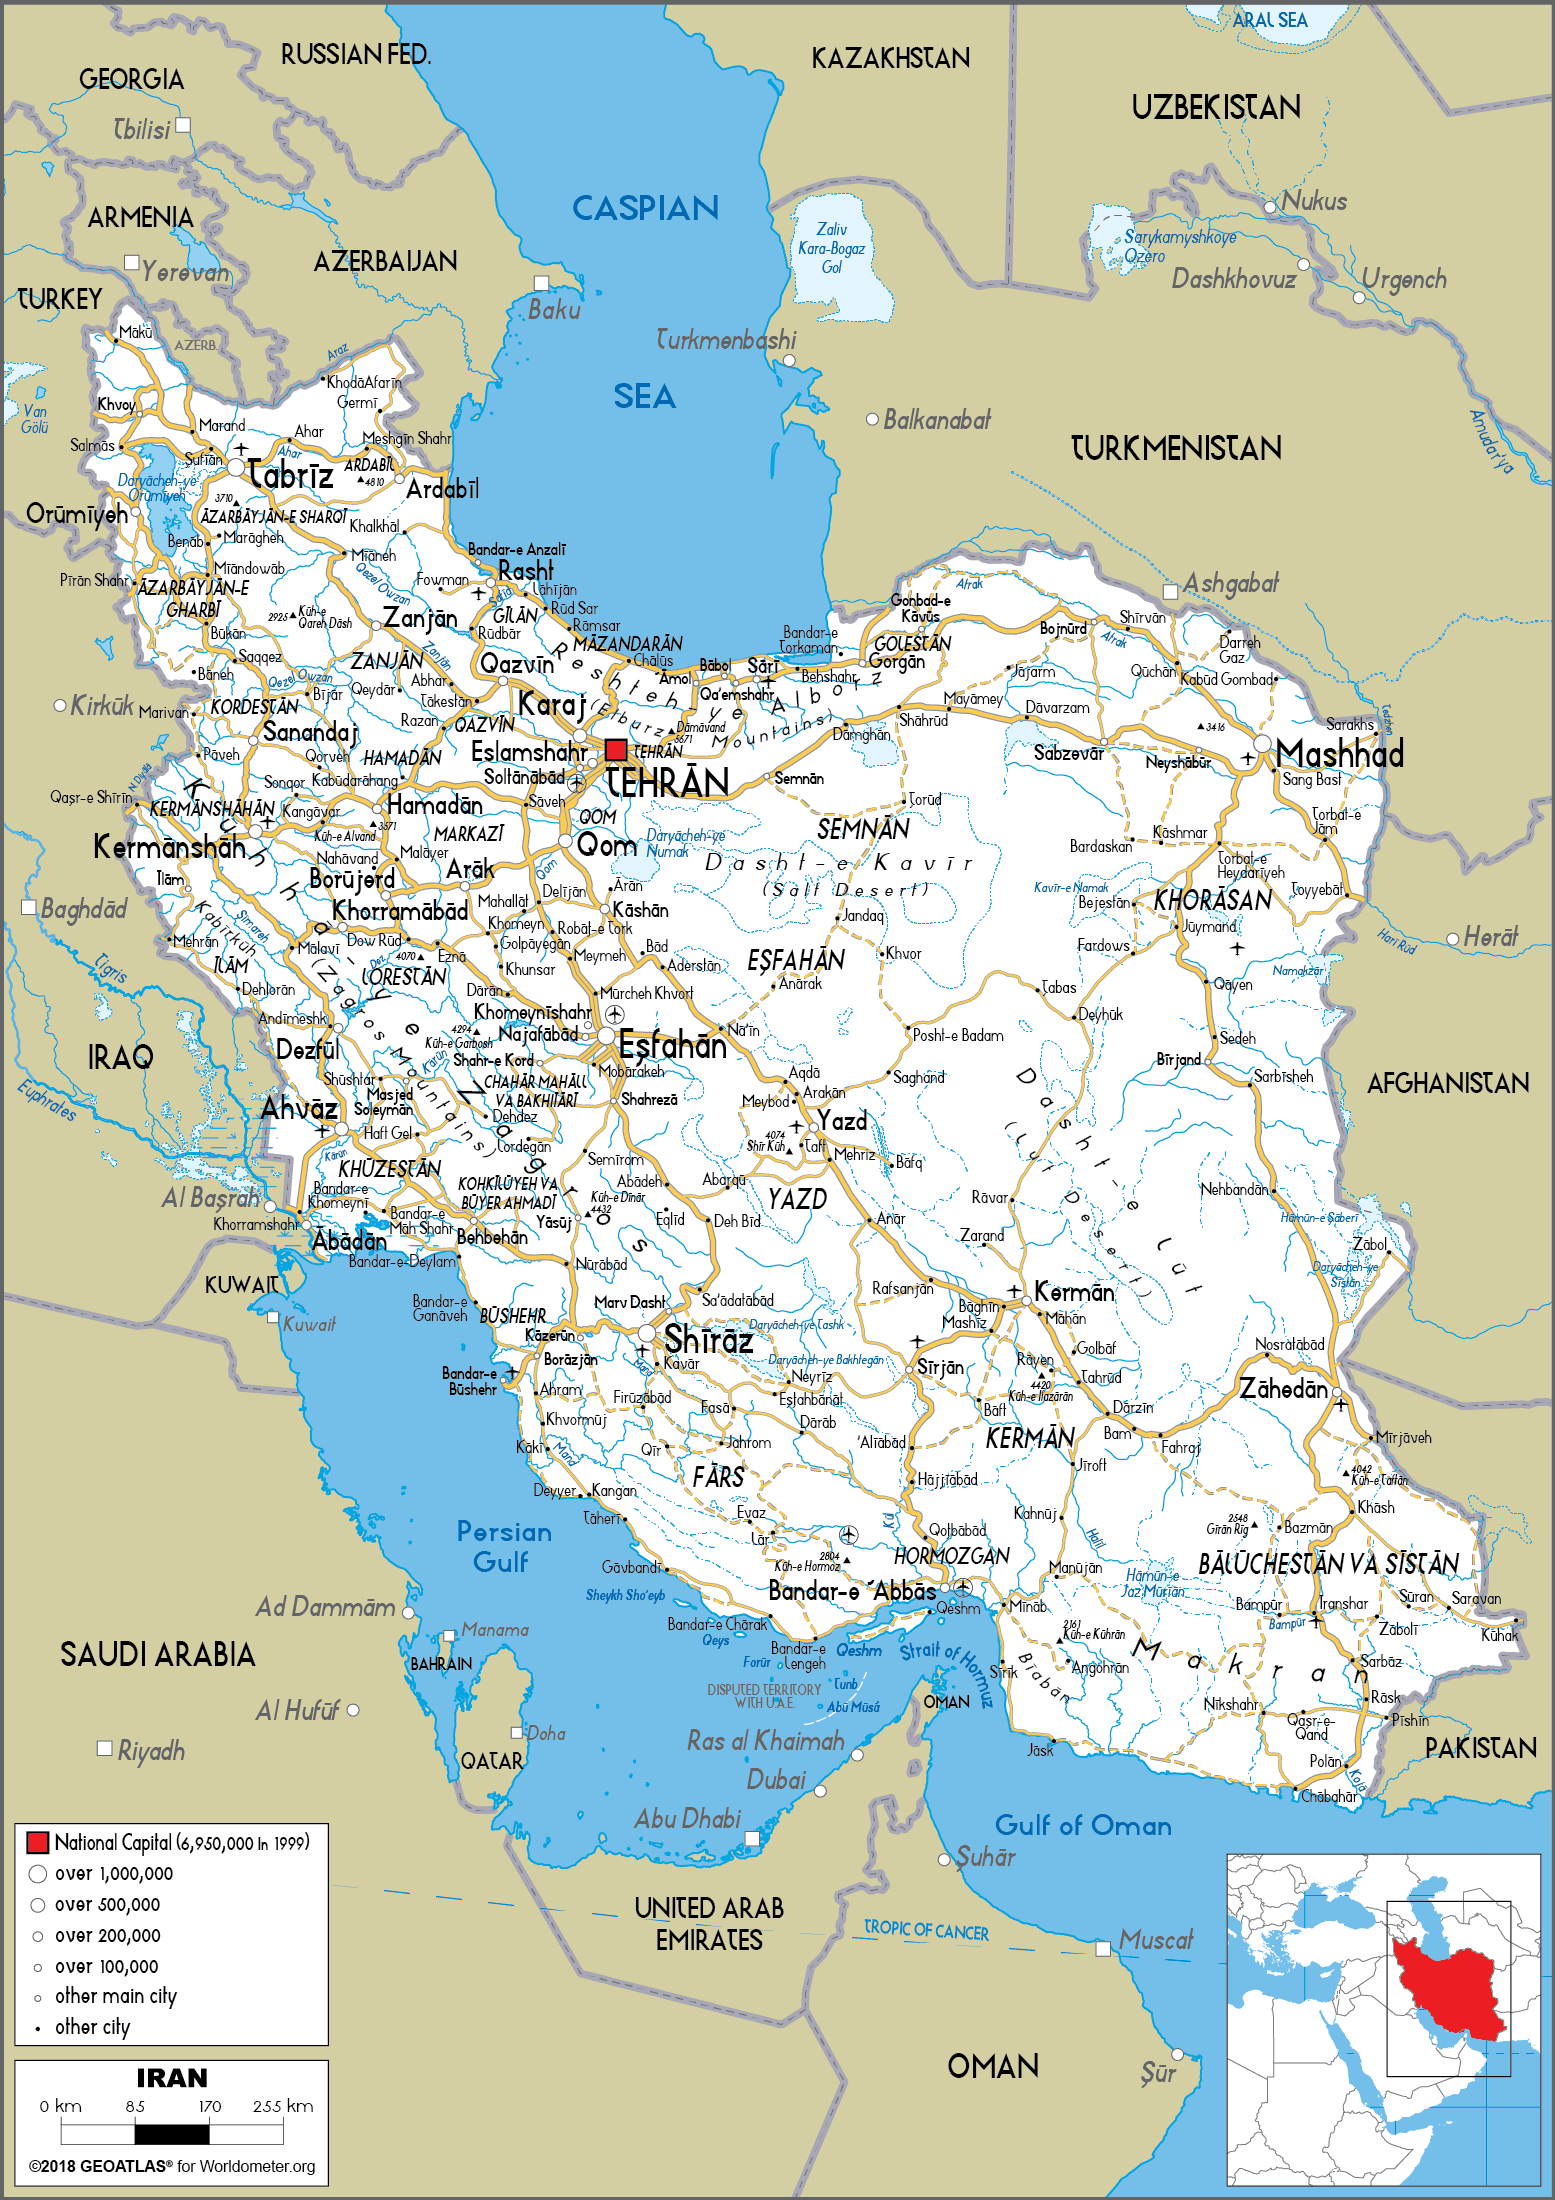 Bản đồ Iran khổ lớn là một tác phẩm nghệ thuật mang tính hình thức cao, đồng thời cũng là một công cụ hữu ích giúp học sinh, nhà nghiên cứu và du khách tìm hiểu về quốc gia này. Với nhiều chi tiết và thông tin cập nhật, đây là sản phẩm không thể thiếu đối với những ai quan tâm đến Iran.